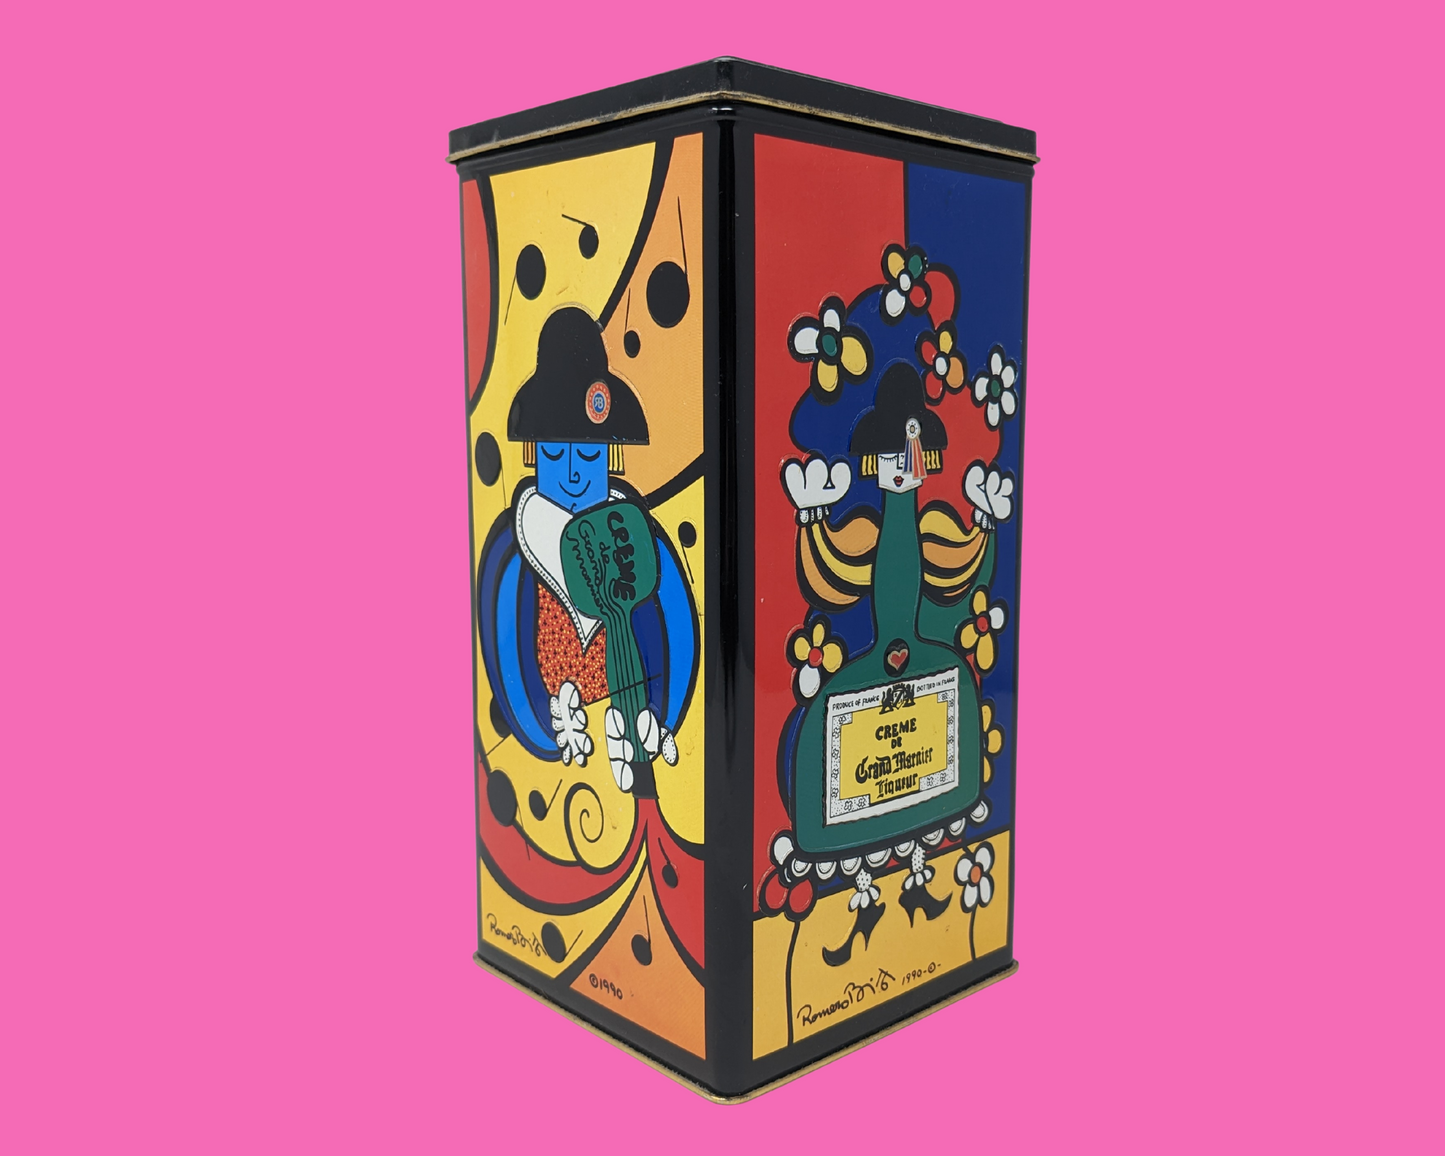 Vintage 1990's Crème de Grand Marnier Liqueur Colourful Tin Box